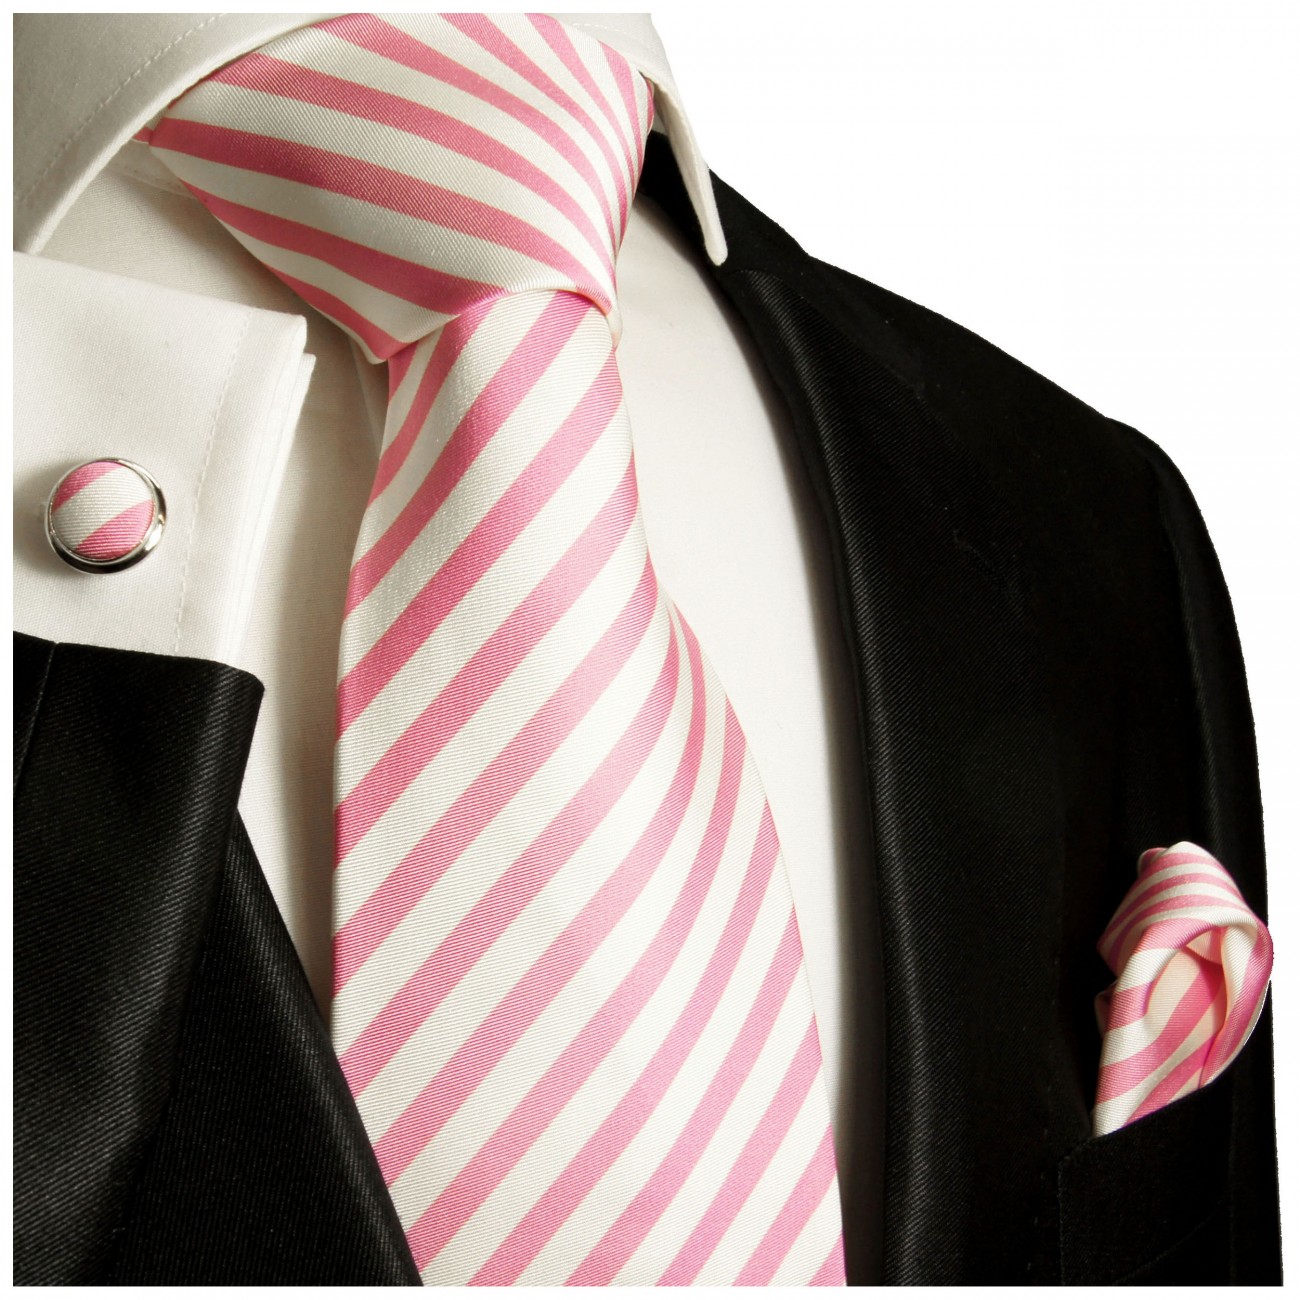 Krawatte pink weiß gestreift Seide mit Einstecktuch und Manschettenknöpfe